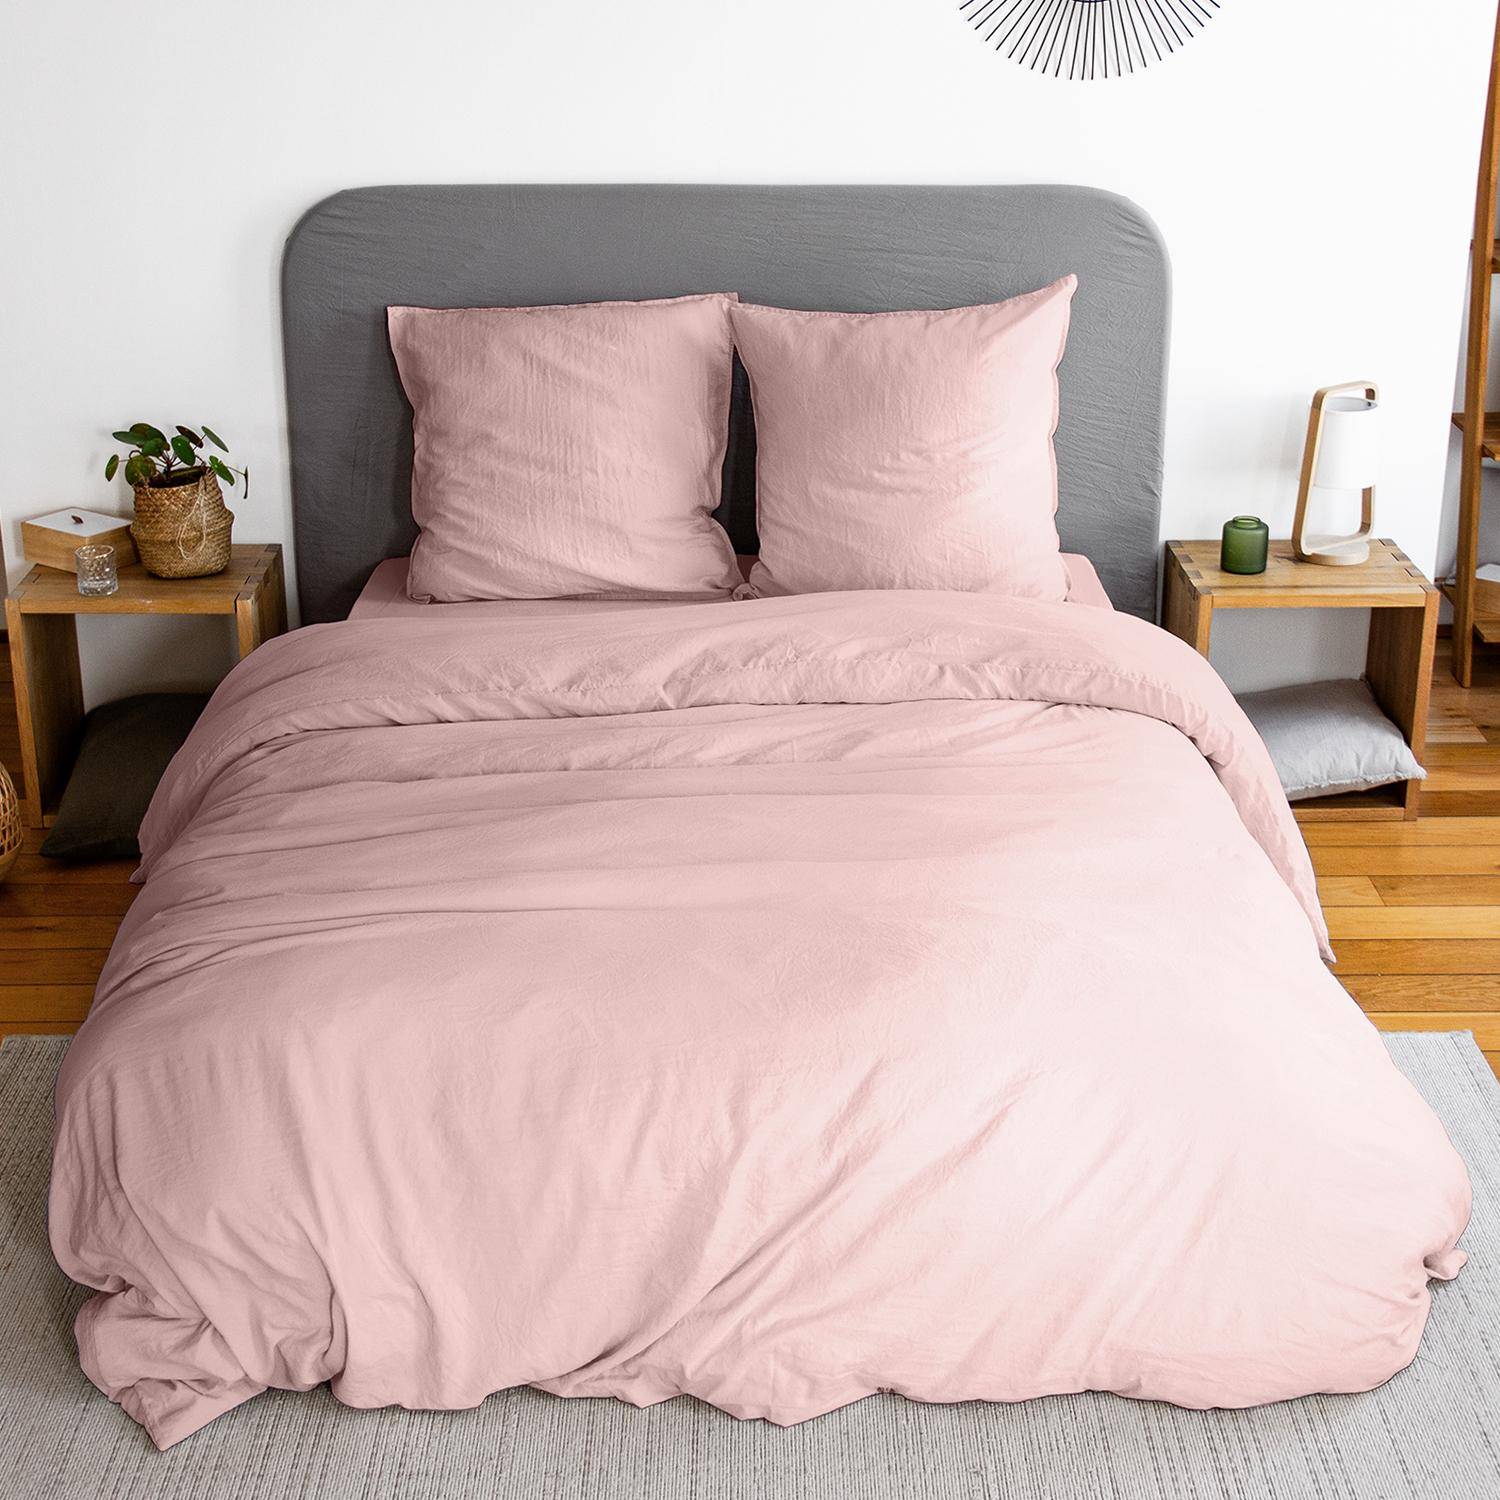 Parure de lit en microfibre lavée, rose poudré, 260 x 240cm pour lit 2 places avec 1 housse de couette et 2 taies d'oreillers Photo1